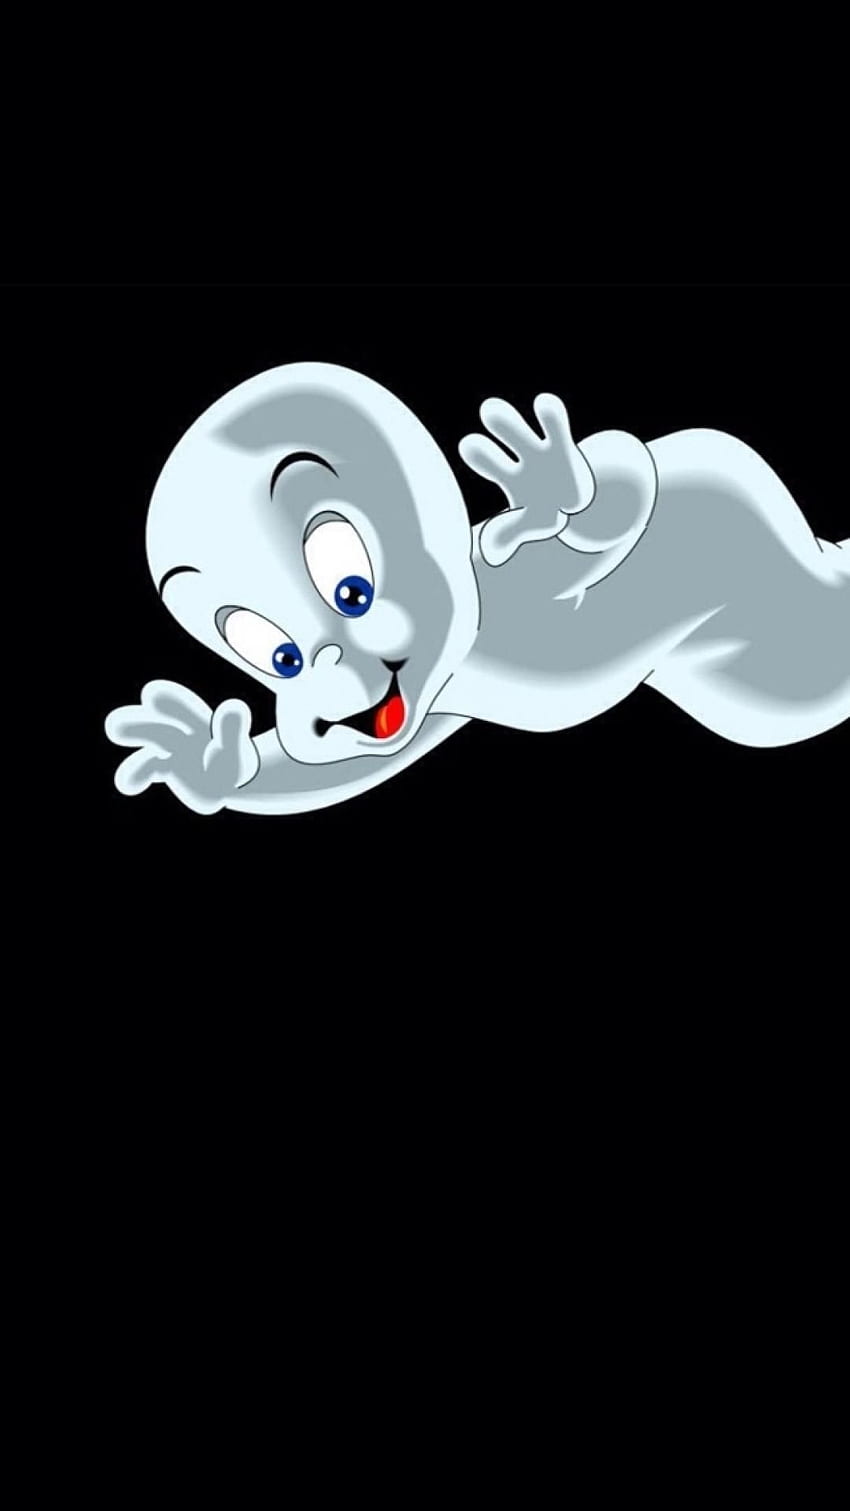 iphone 6 retina . Casper si hantu ramah, Happy halloween , iPhone Halloween, iPhone Kartun Hantu wallpaper ponsel HD